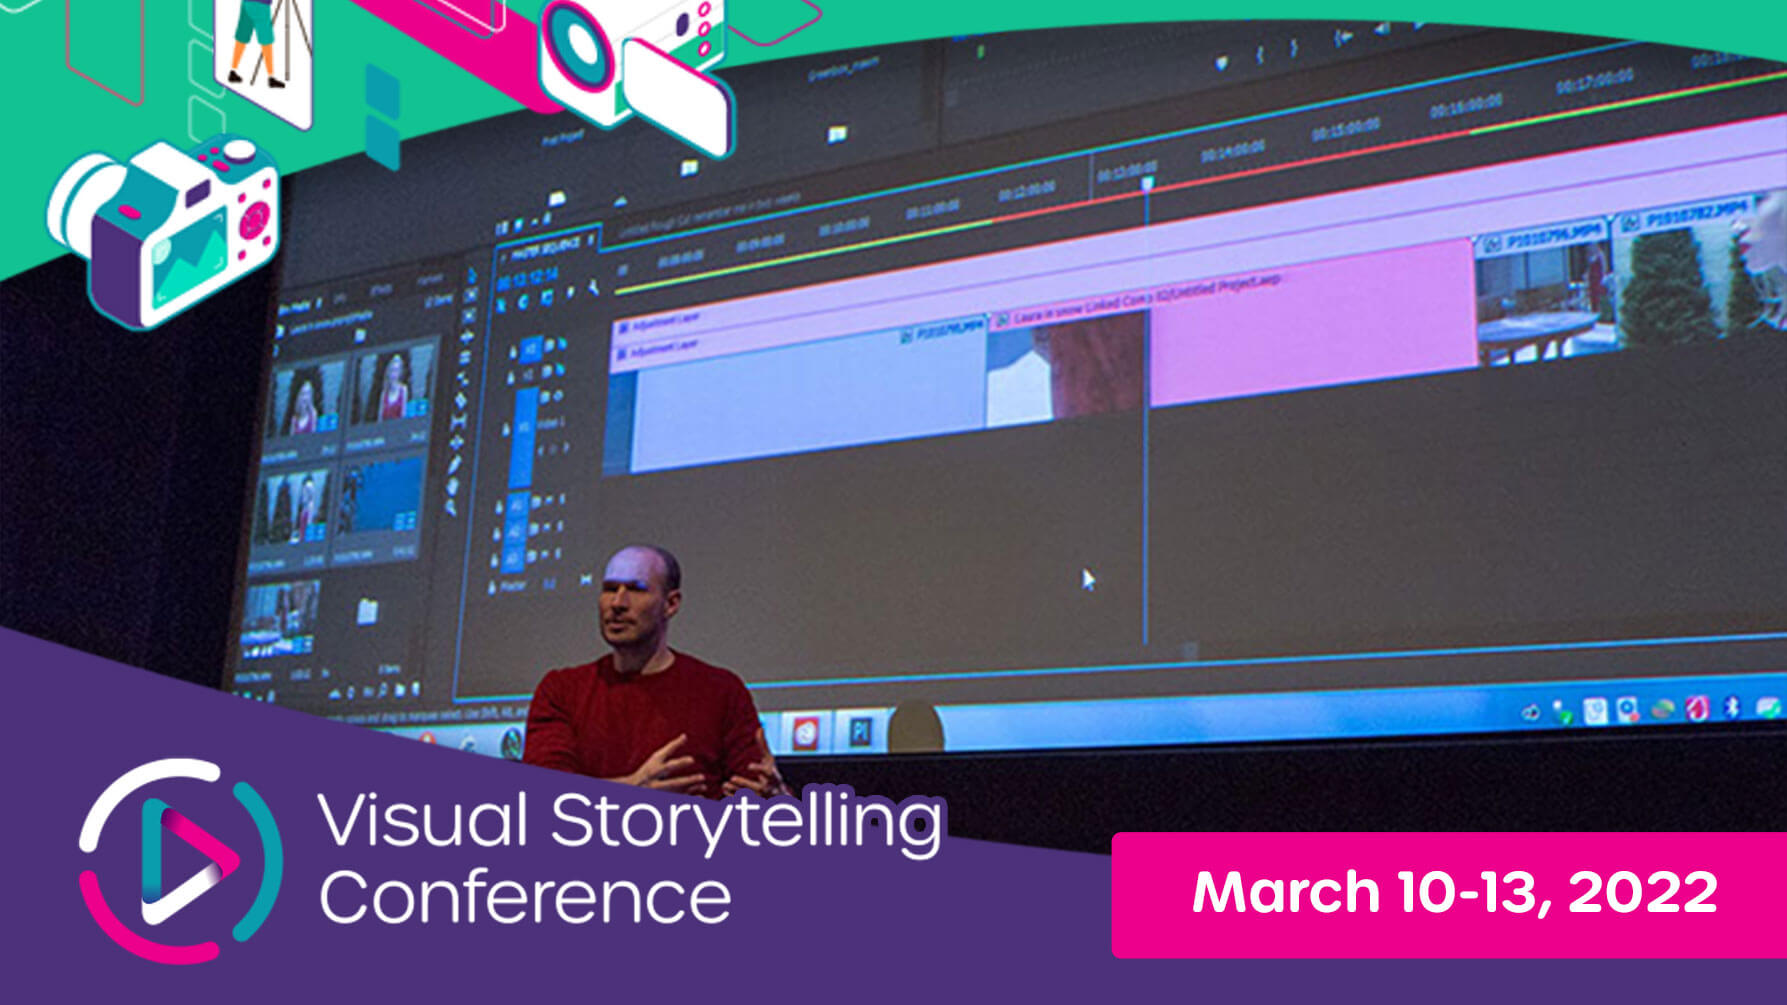 Visual Storytelling Conference: Meet Maxim Jago